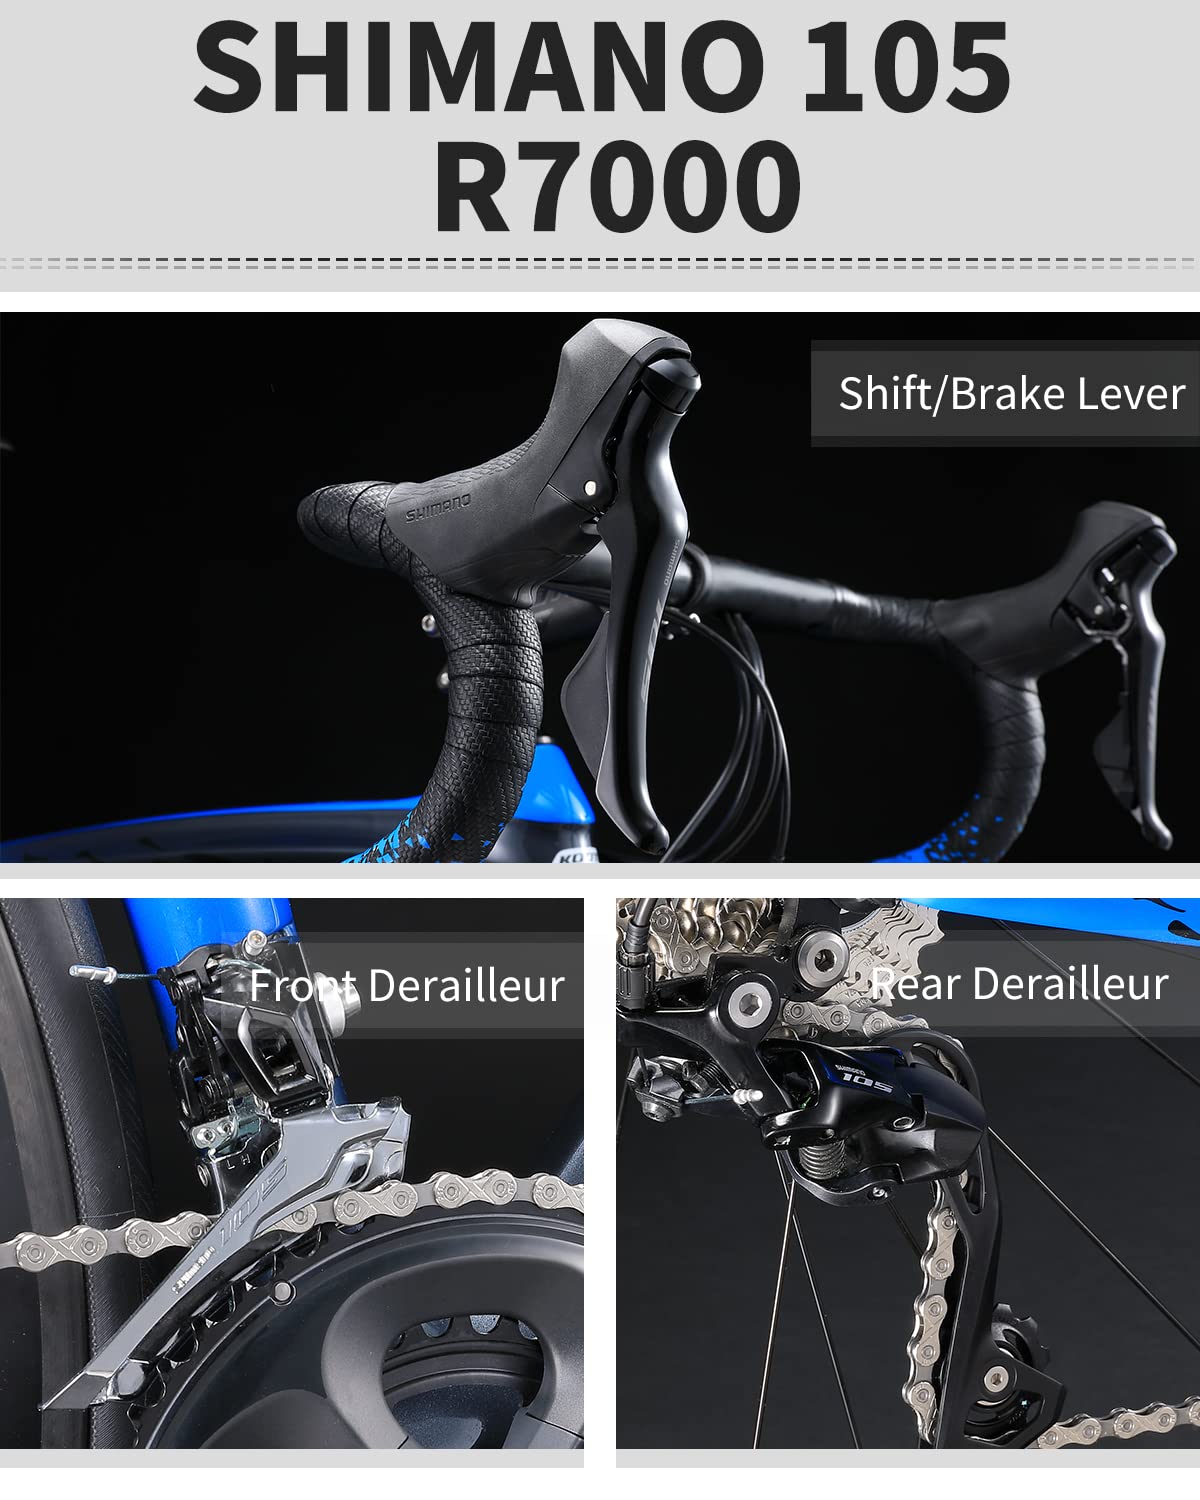 shimano 105 R7000 groupset-kootu r03 carbon road bike 22 speed